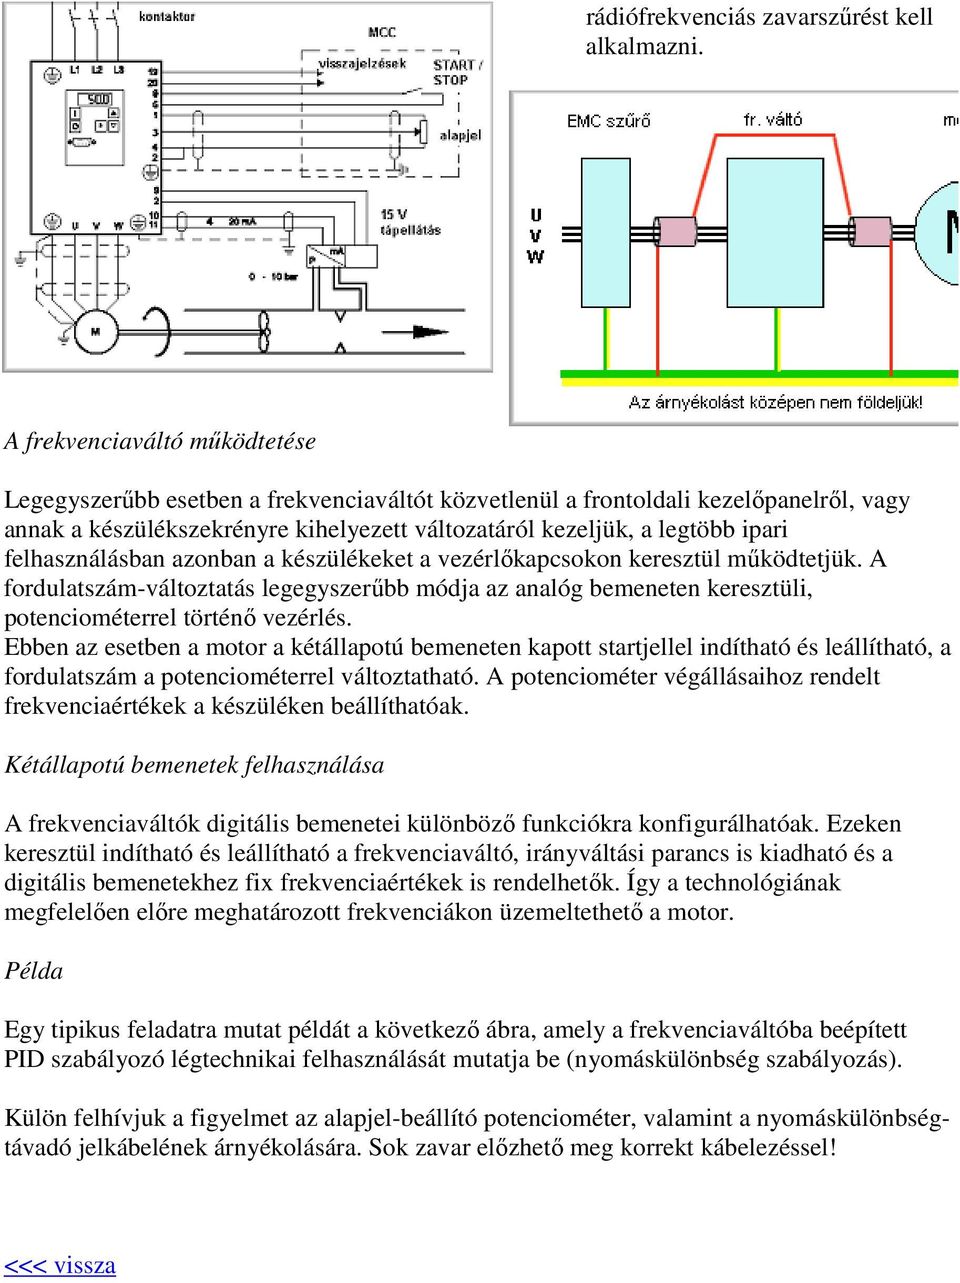 Frekvenciaváltókról alapfokon - 1. rész. Gulyás László, Siemens Rt. ( ) -  PDF Free Download